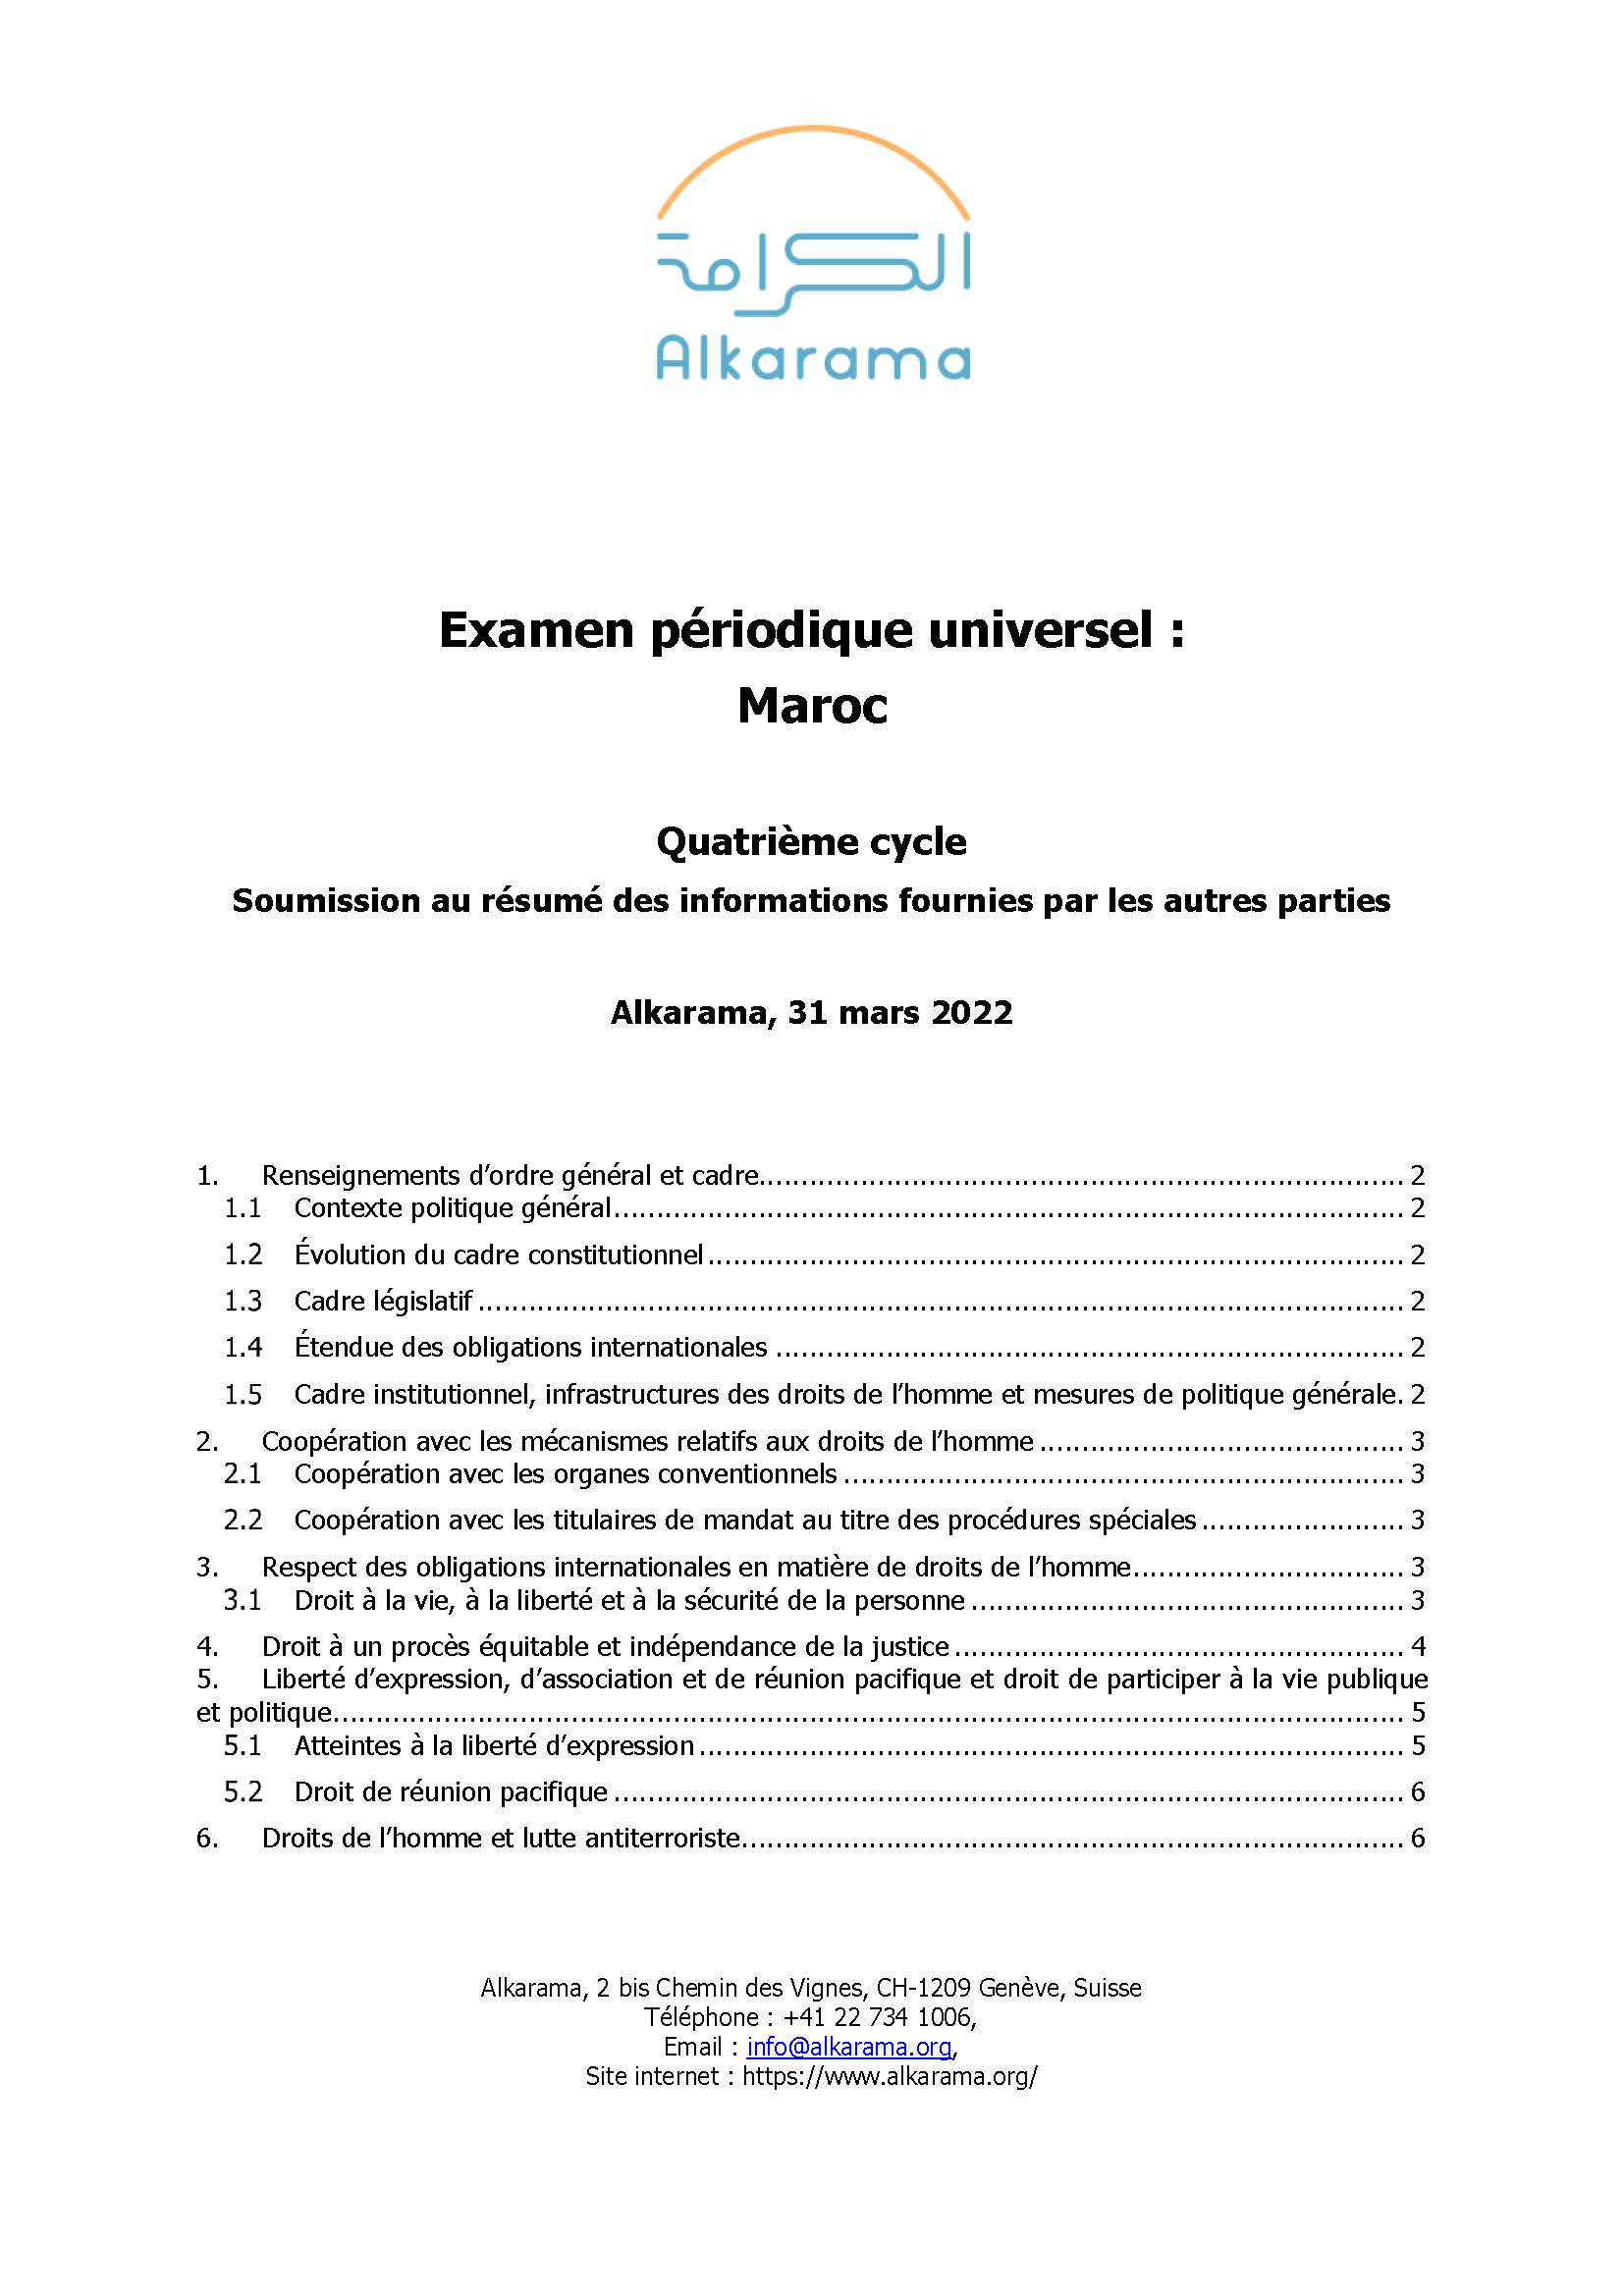 Maroc: Examen Périodique Universel – Quatrième cycle - rapport d'Alkarama mars 2022